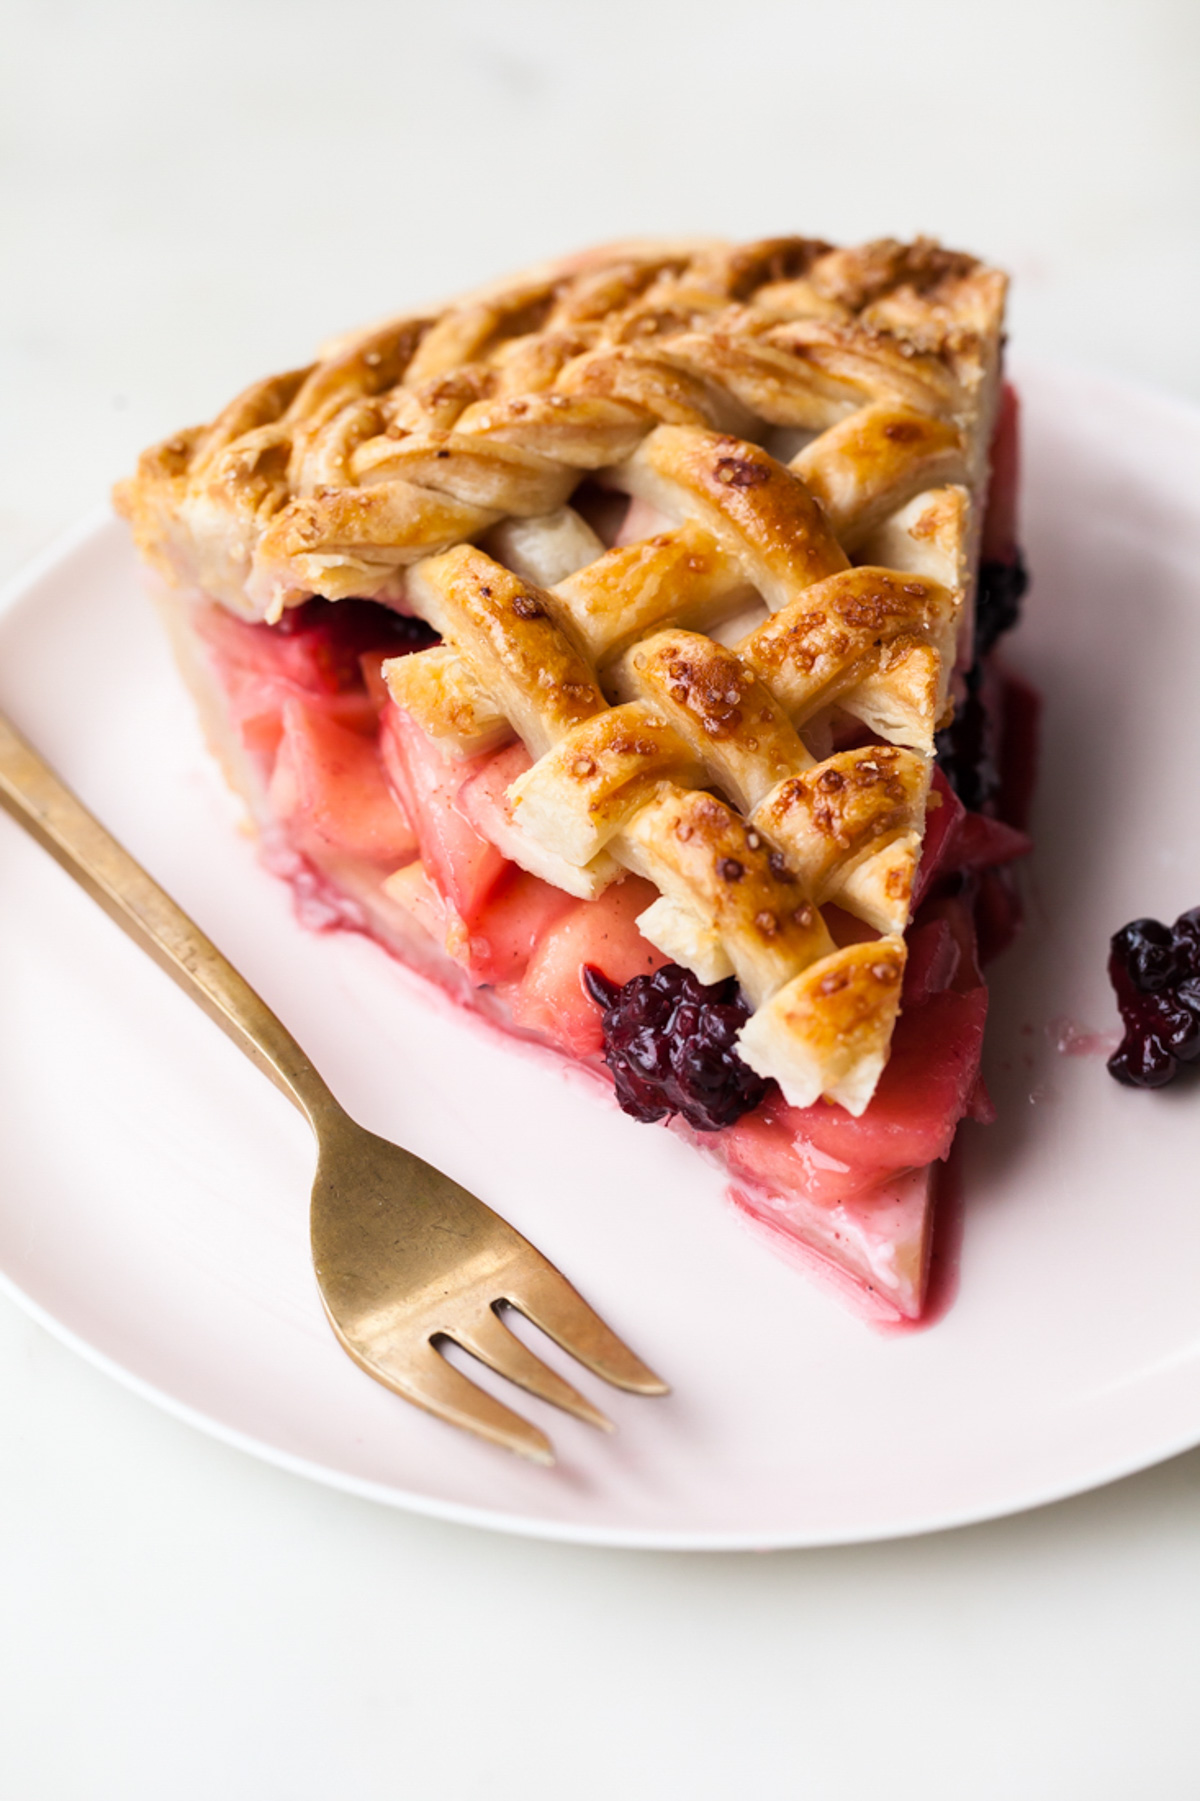 A slice of apple blackberry pie with a lattice crust